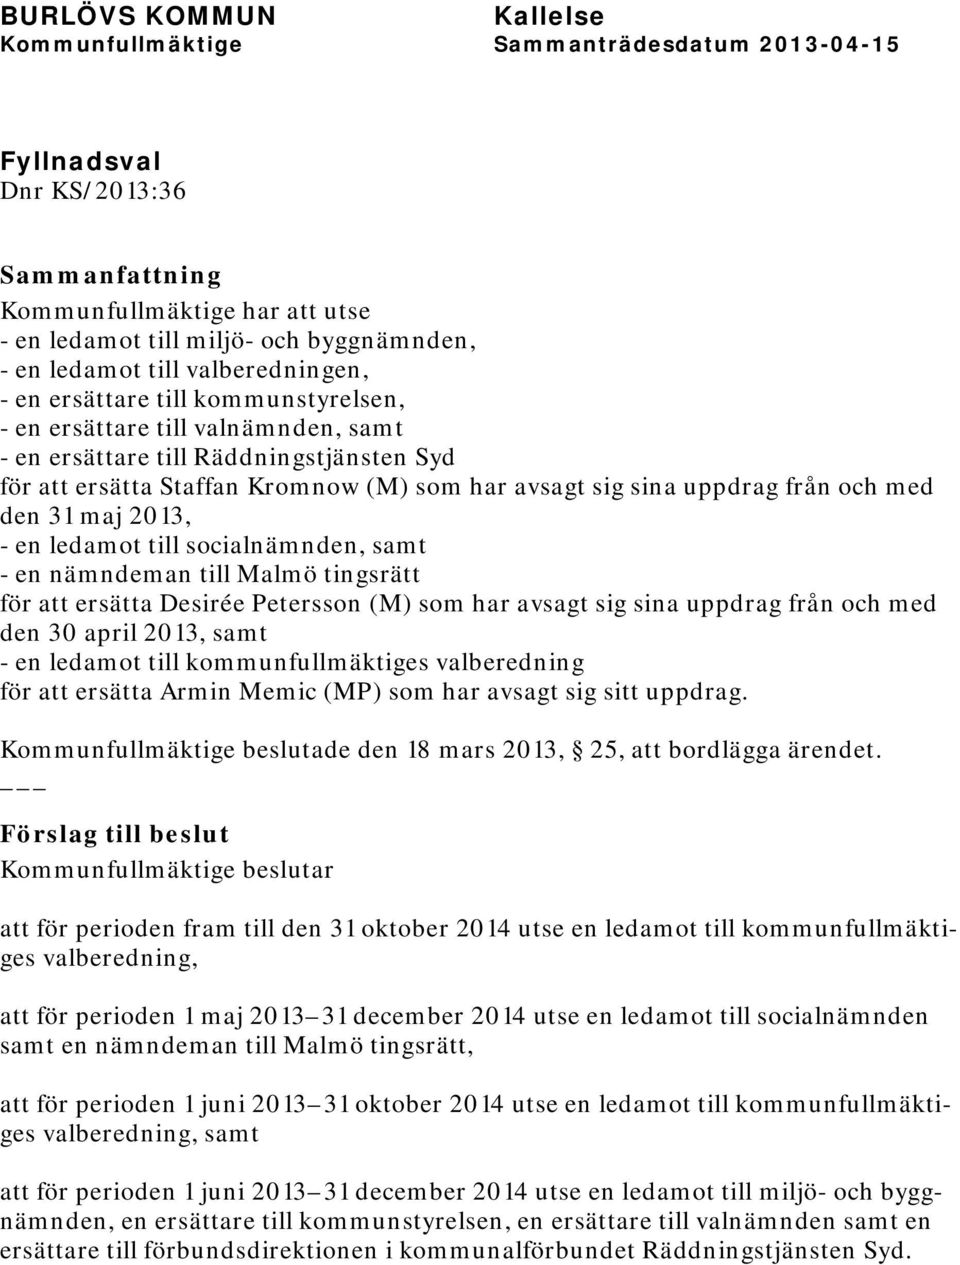 nämndeman till Malmö tingsrätt för att ersätta Desirée Petersson (M) som har avsagt sig sina uppdrag från och med den 30 april 2013, samt - en ledamot till kommunfullmäktiges valberedning för att